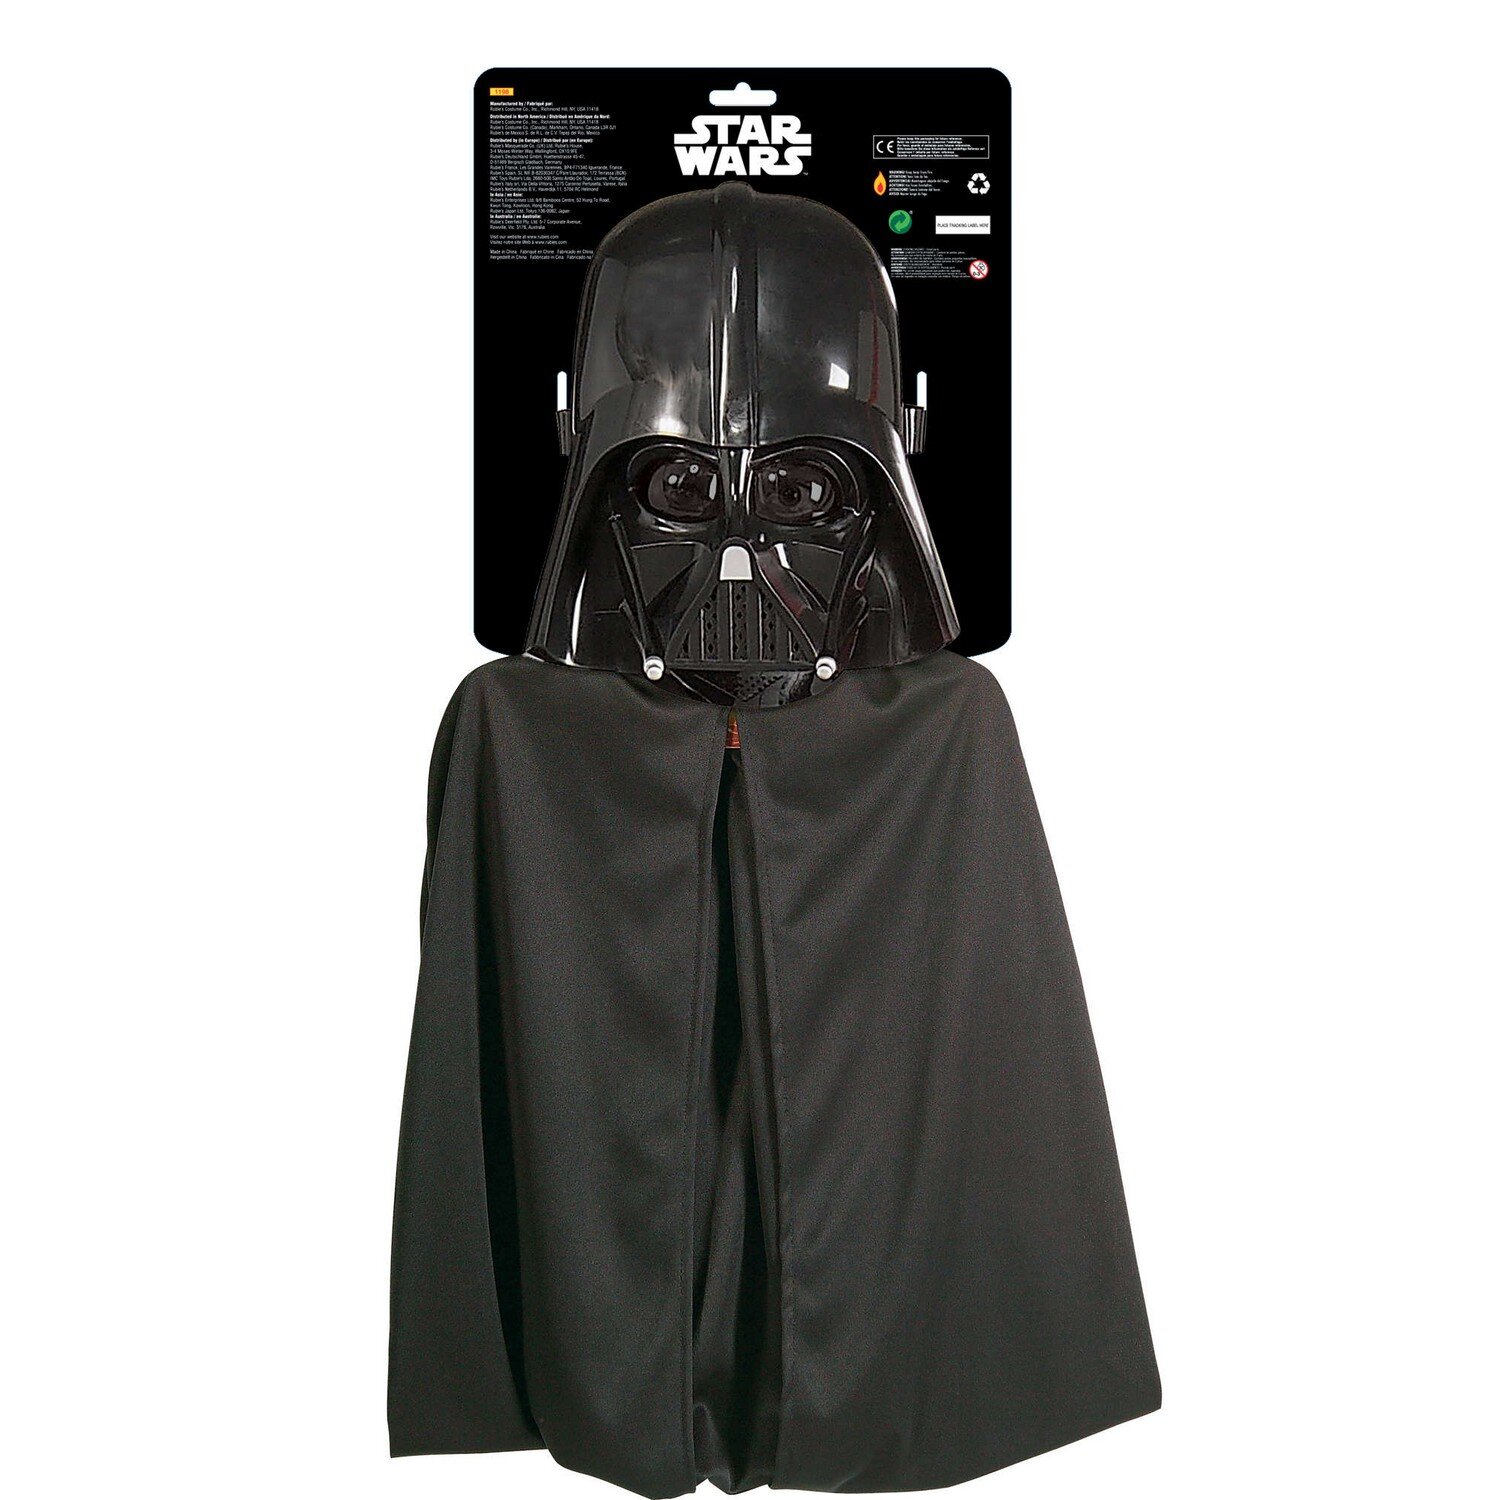 Star Wars Childrens/Kids Darth Vader Mask & Cape Set